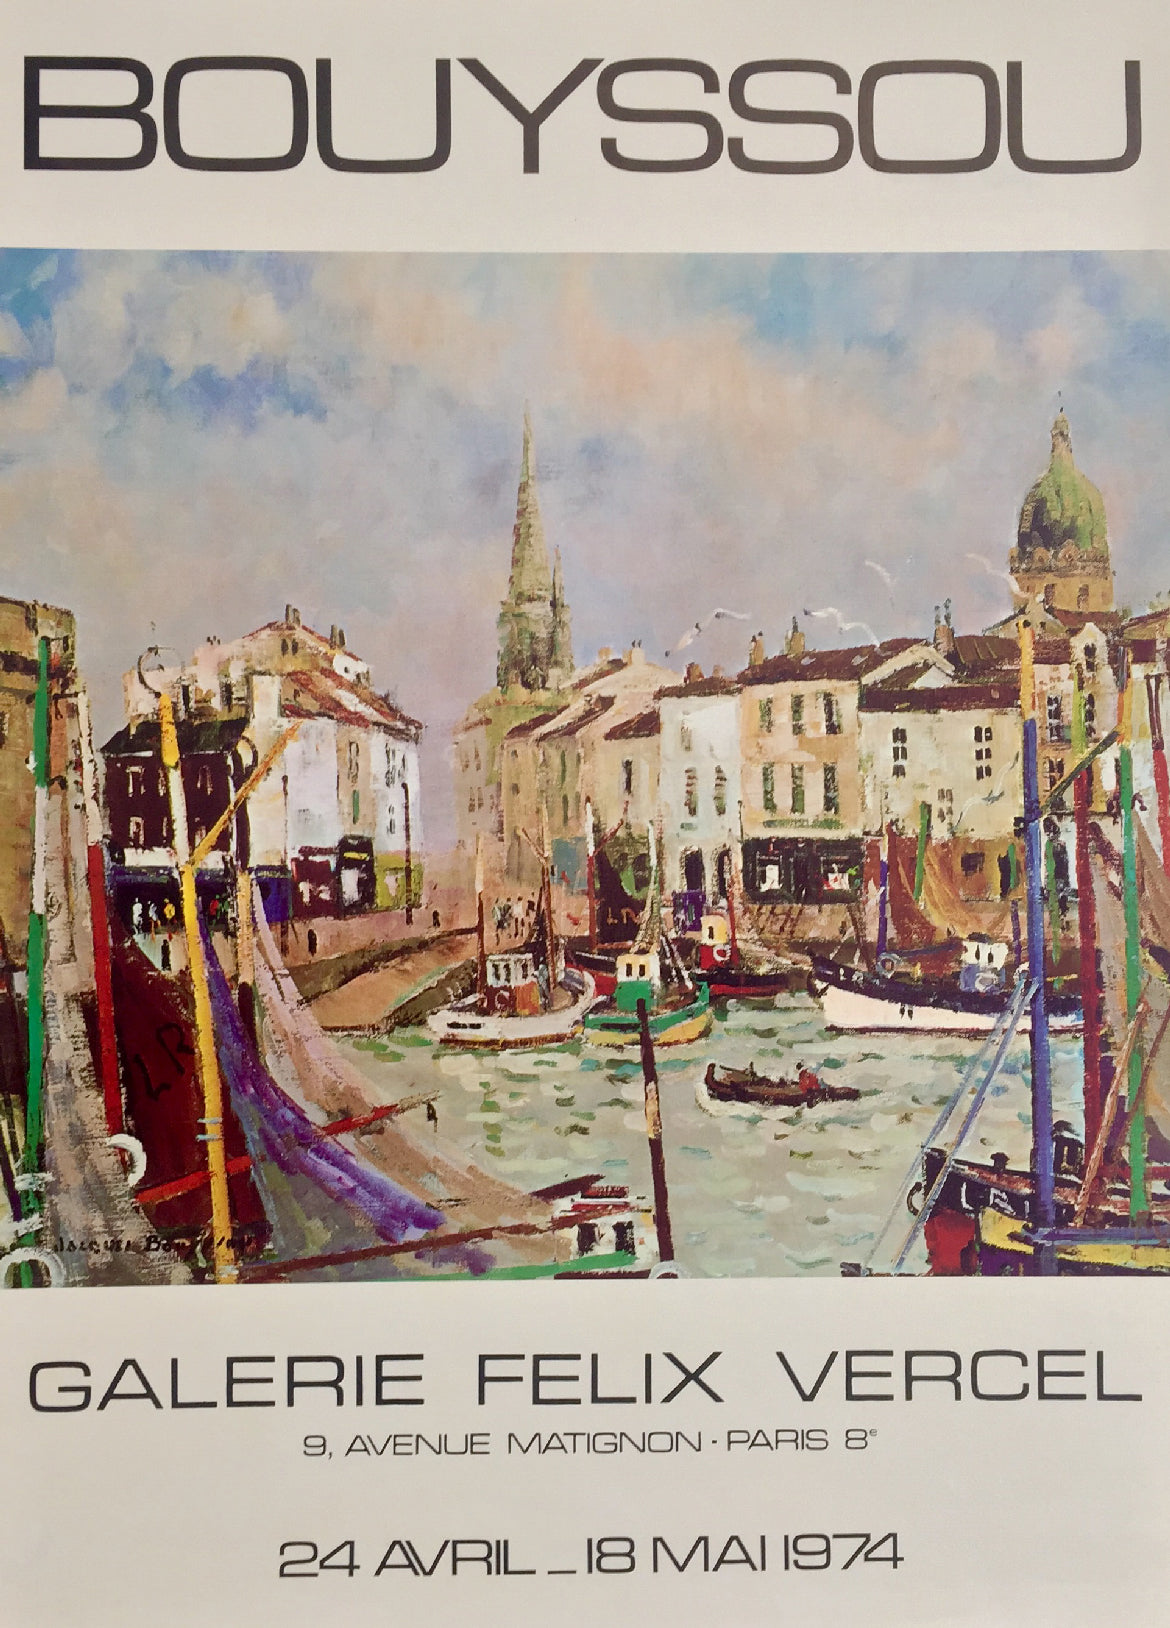 Affiche originale Galerie Félix Vercel Bouyssou, 1974